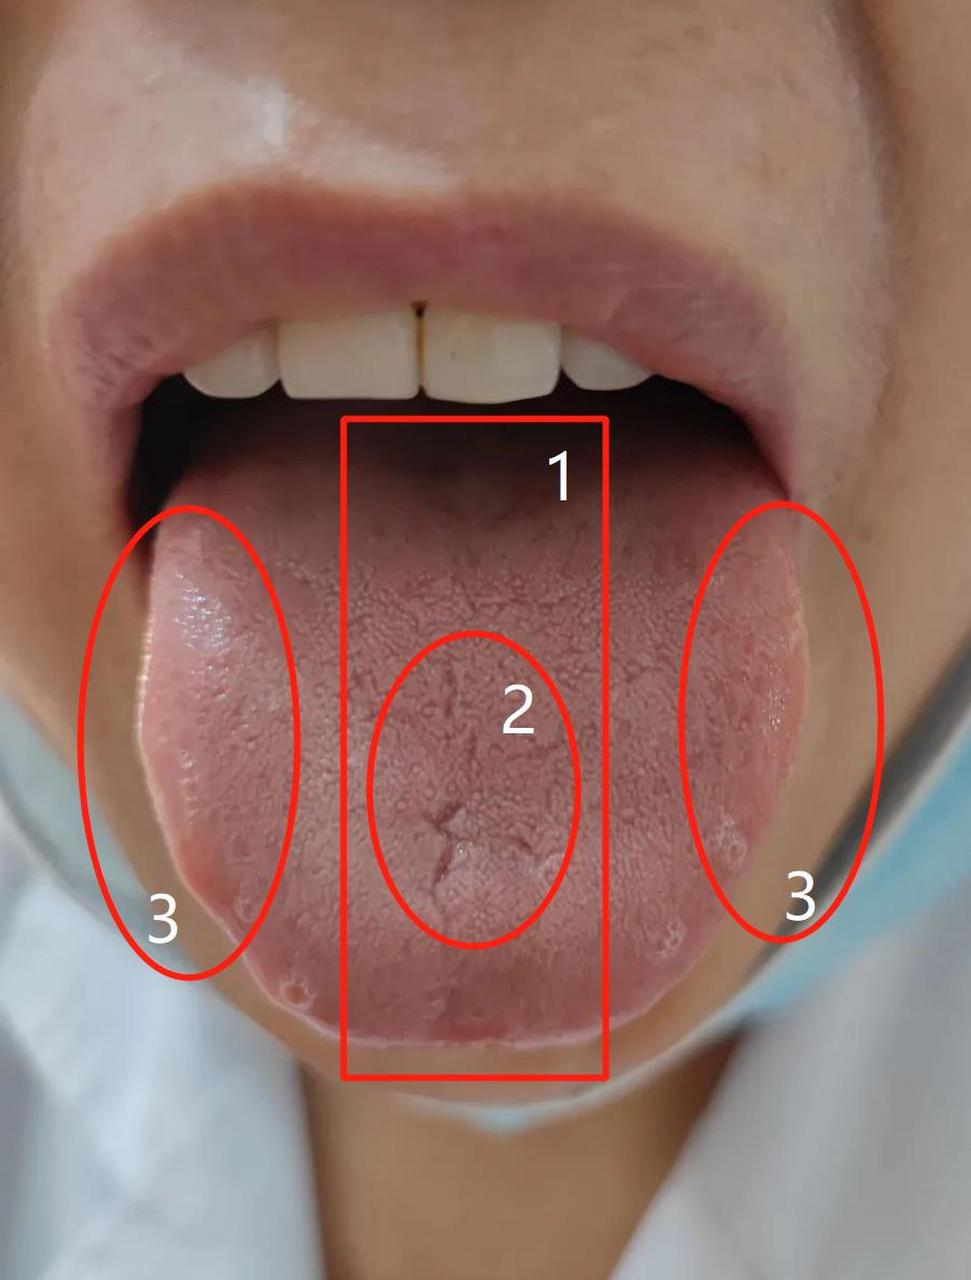 舌头中间凹陷图片